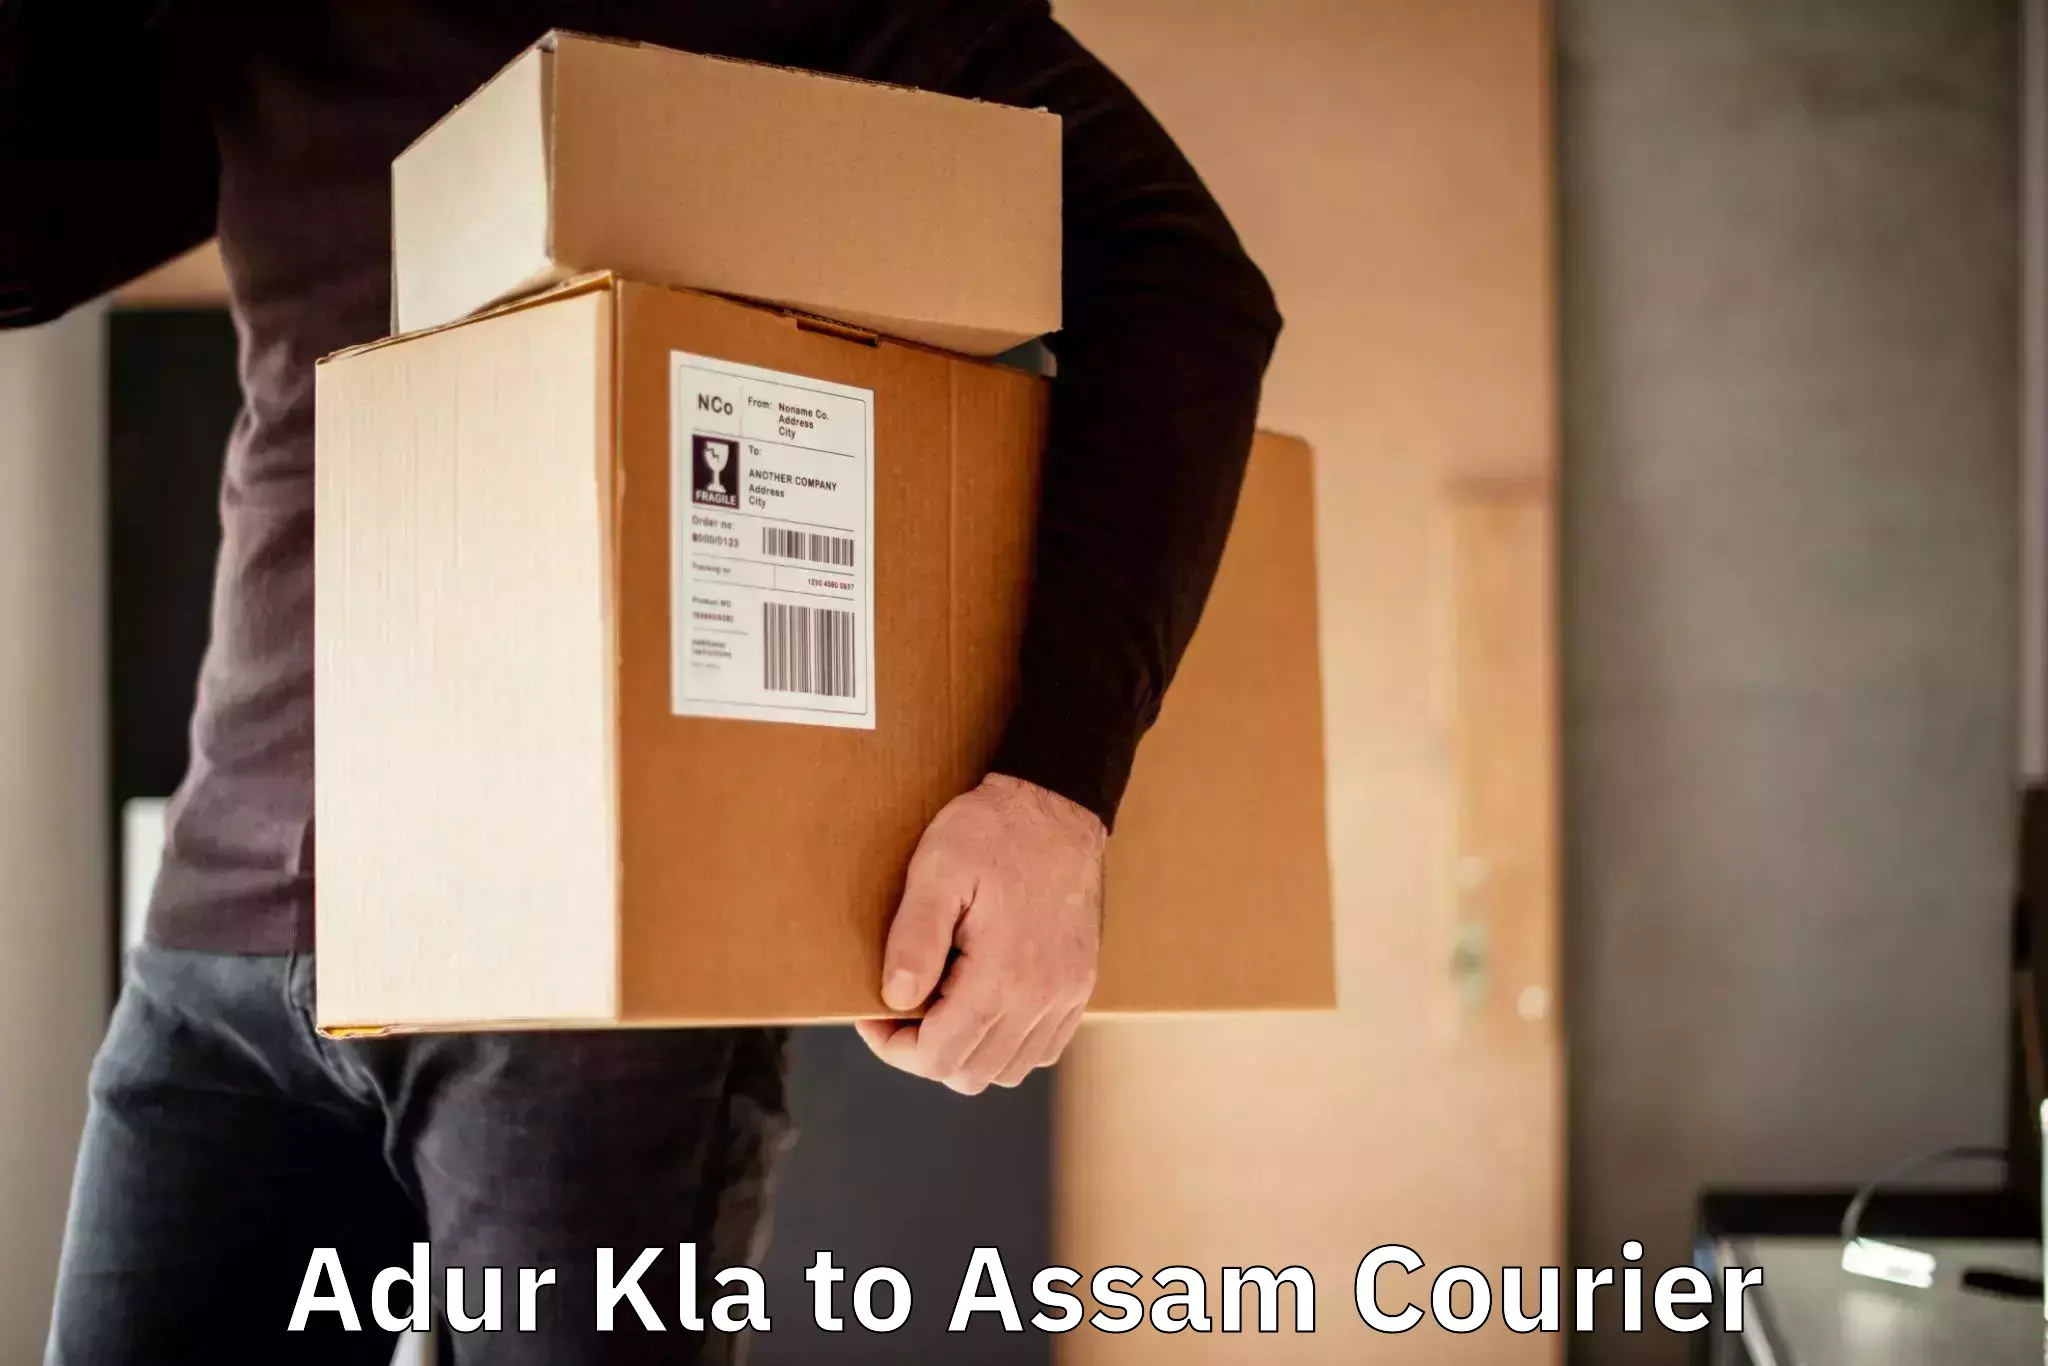 Subscription-based courier Adur Kla to Chariduar